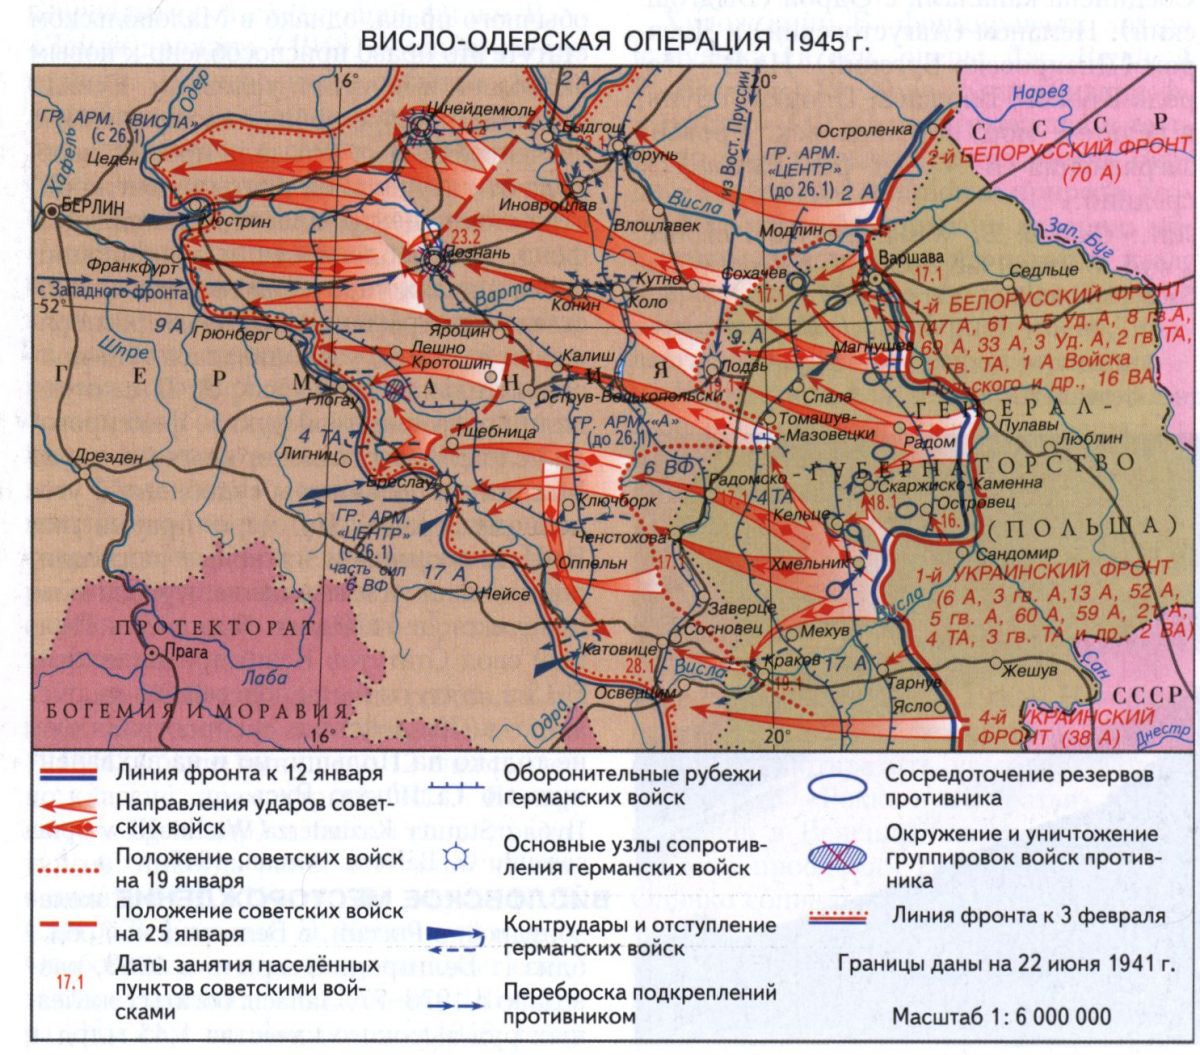 Висло-Одерская операция 1945 года